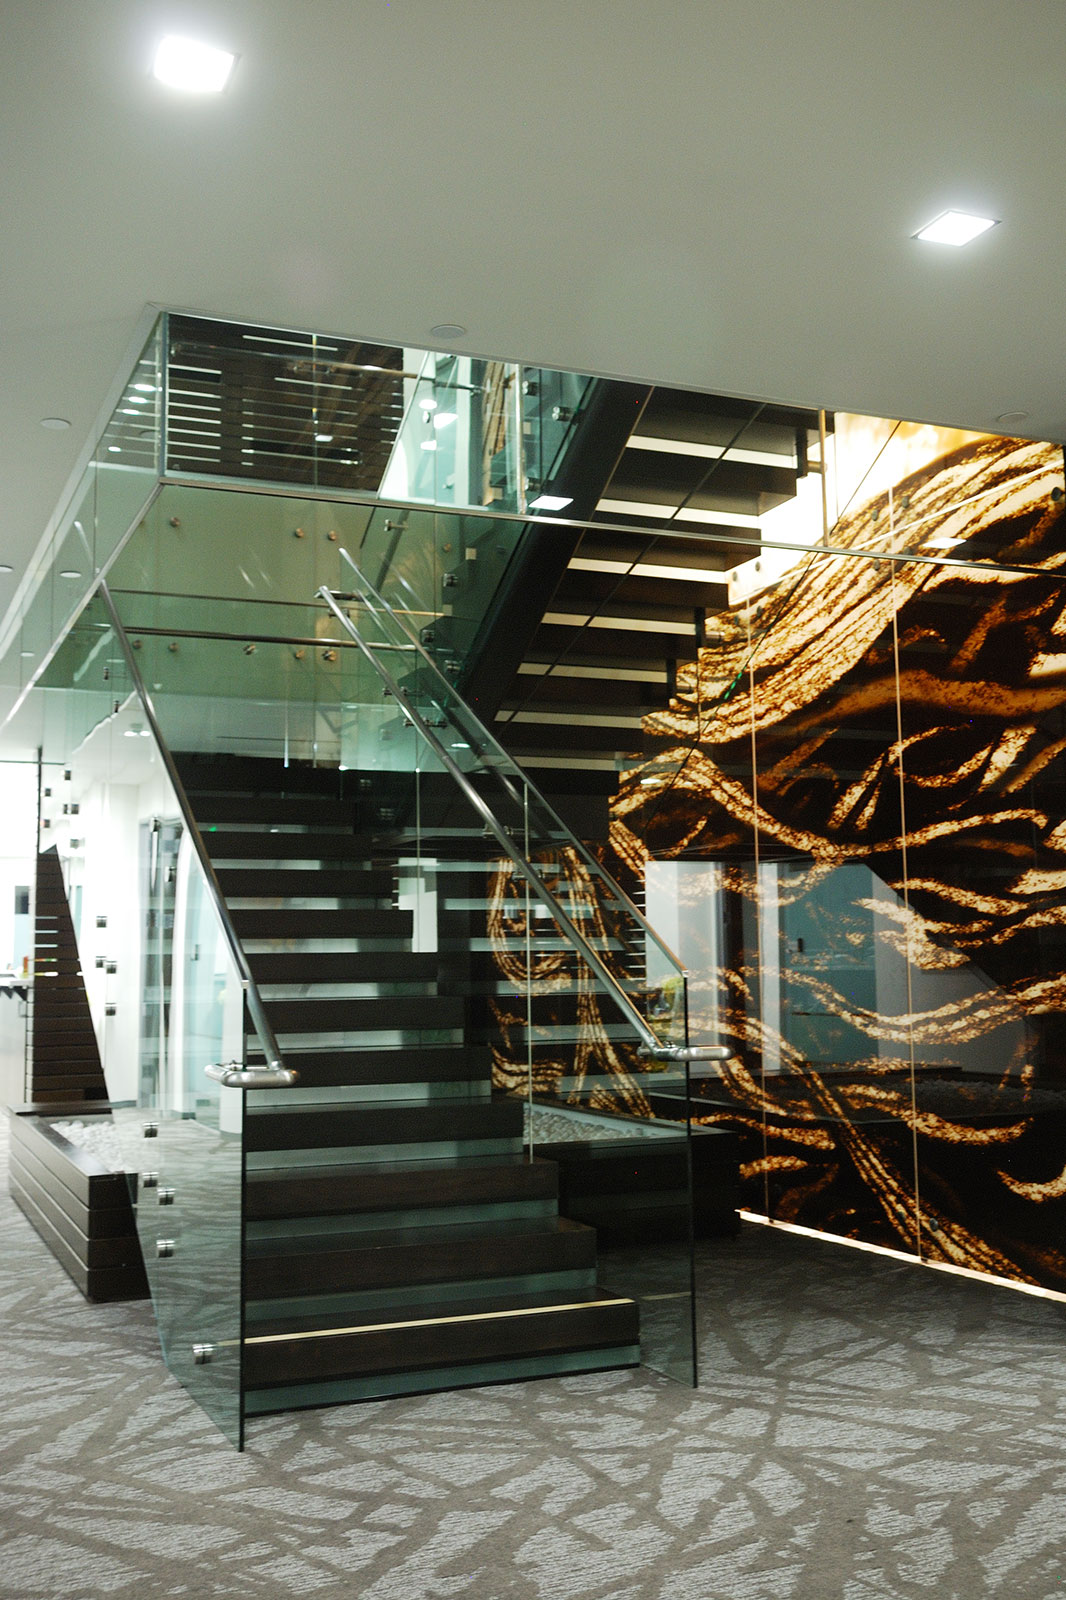 Procopio glass staircase